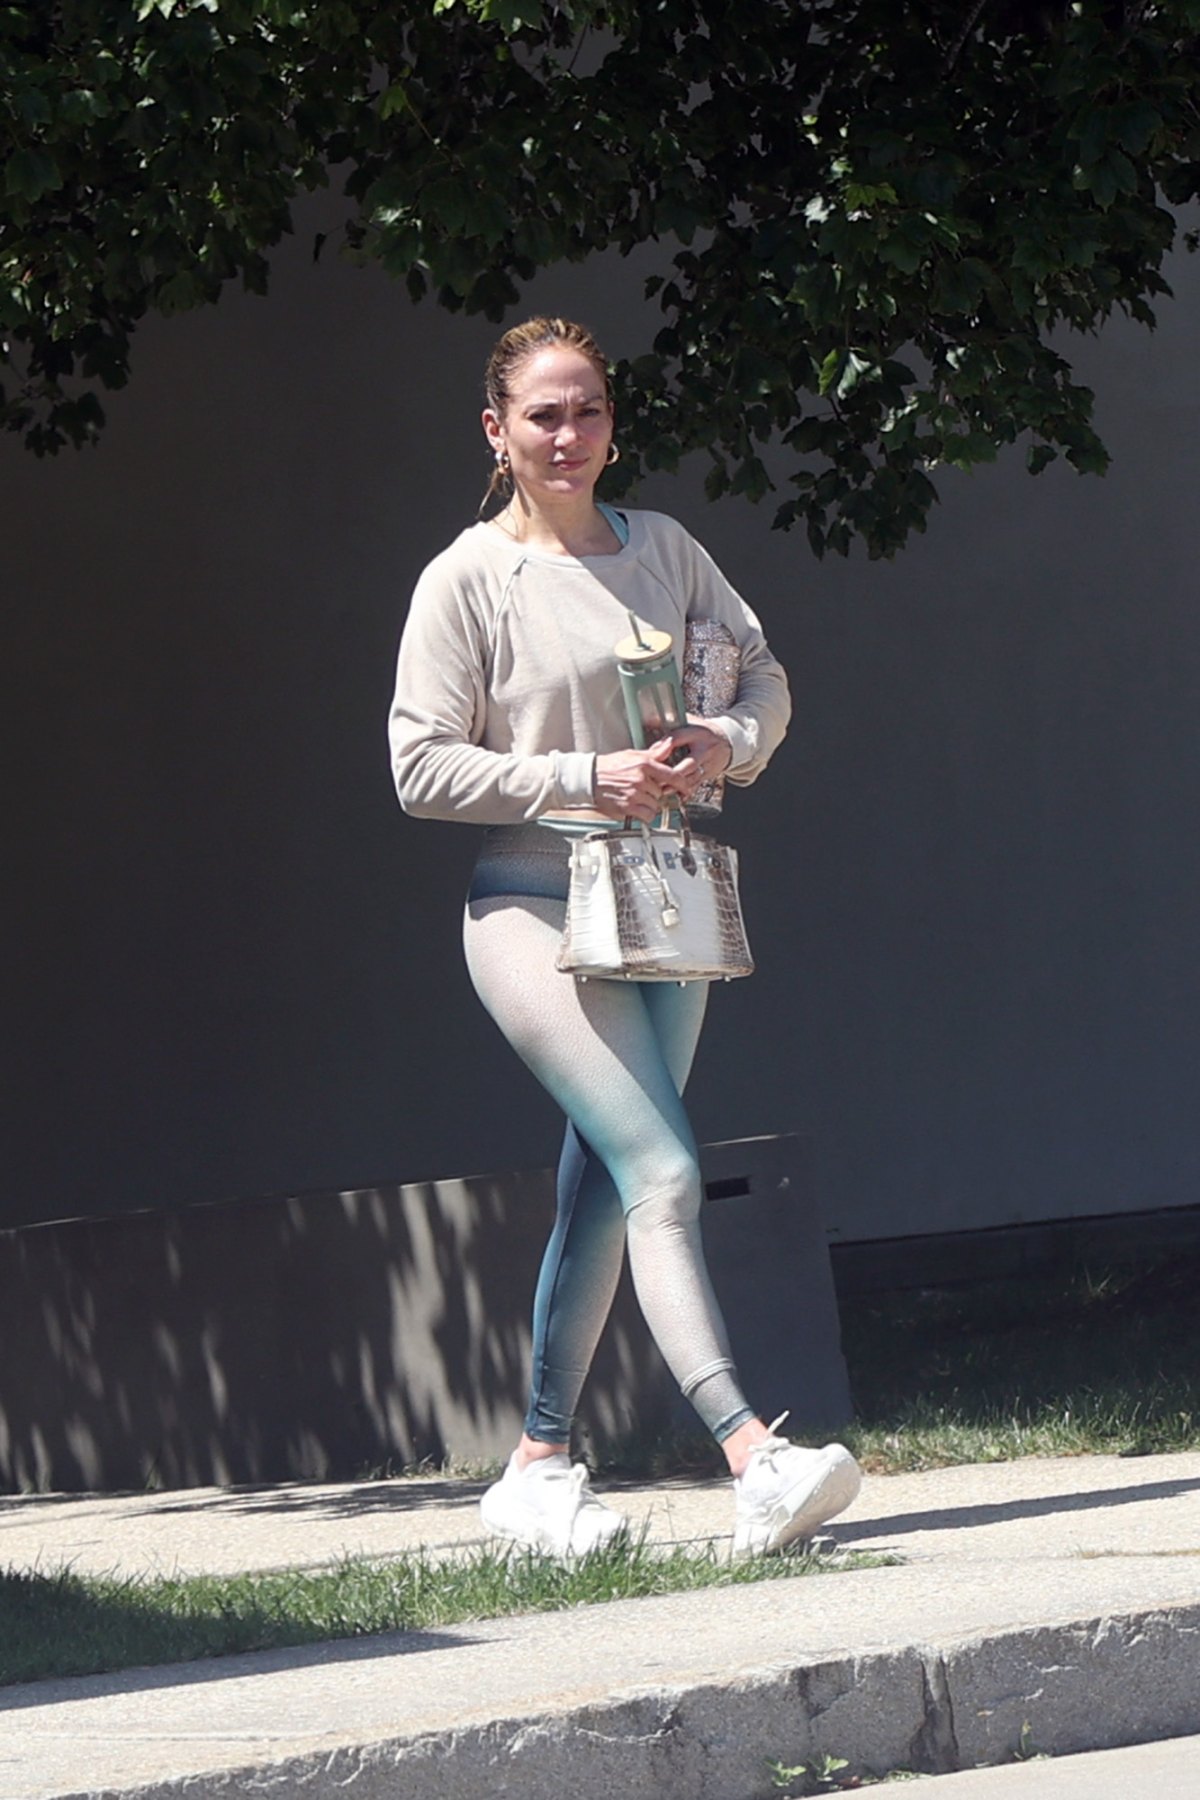 Jennifer Lopez's Best Street Style Looks, Photos – Footwear News